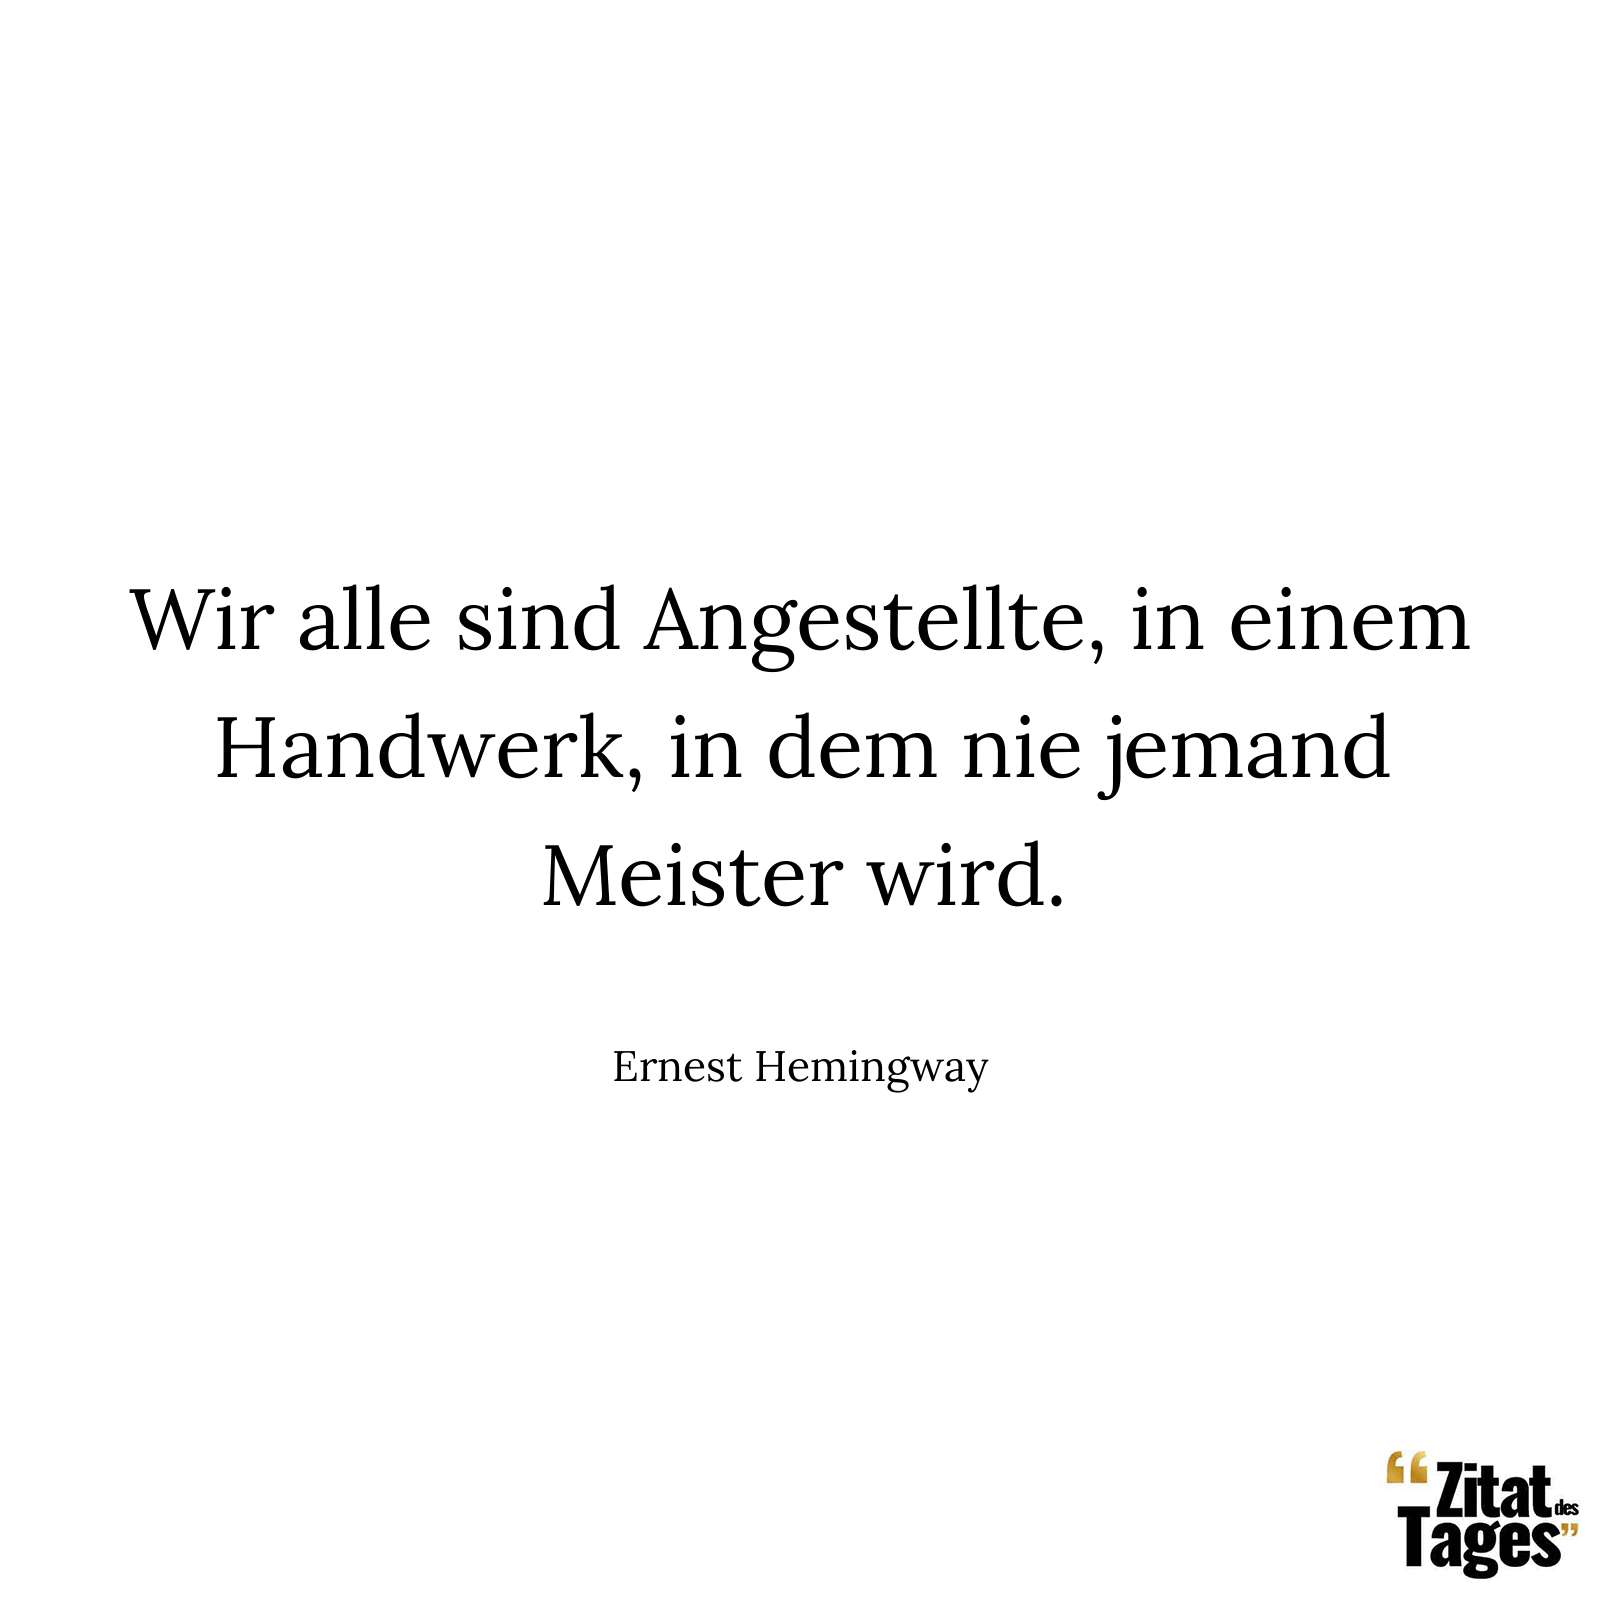 Wir alle sind Angestellte, in einem Handwerk, in dem nie jemand Meister wird. - Ernest Hemingway